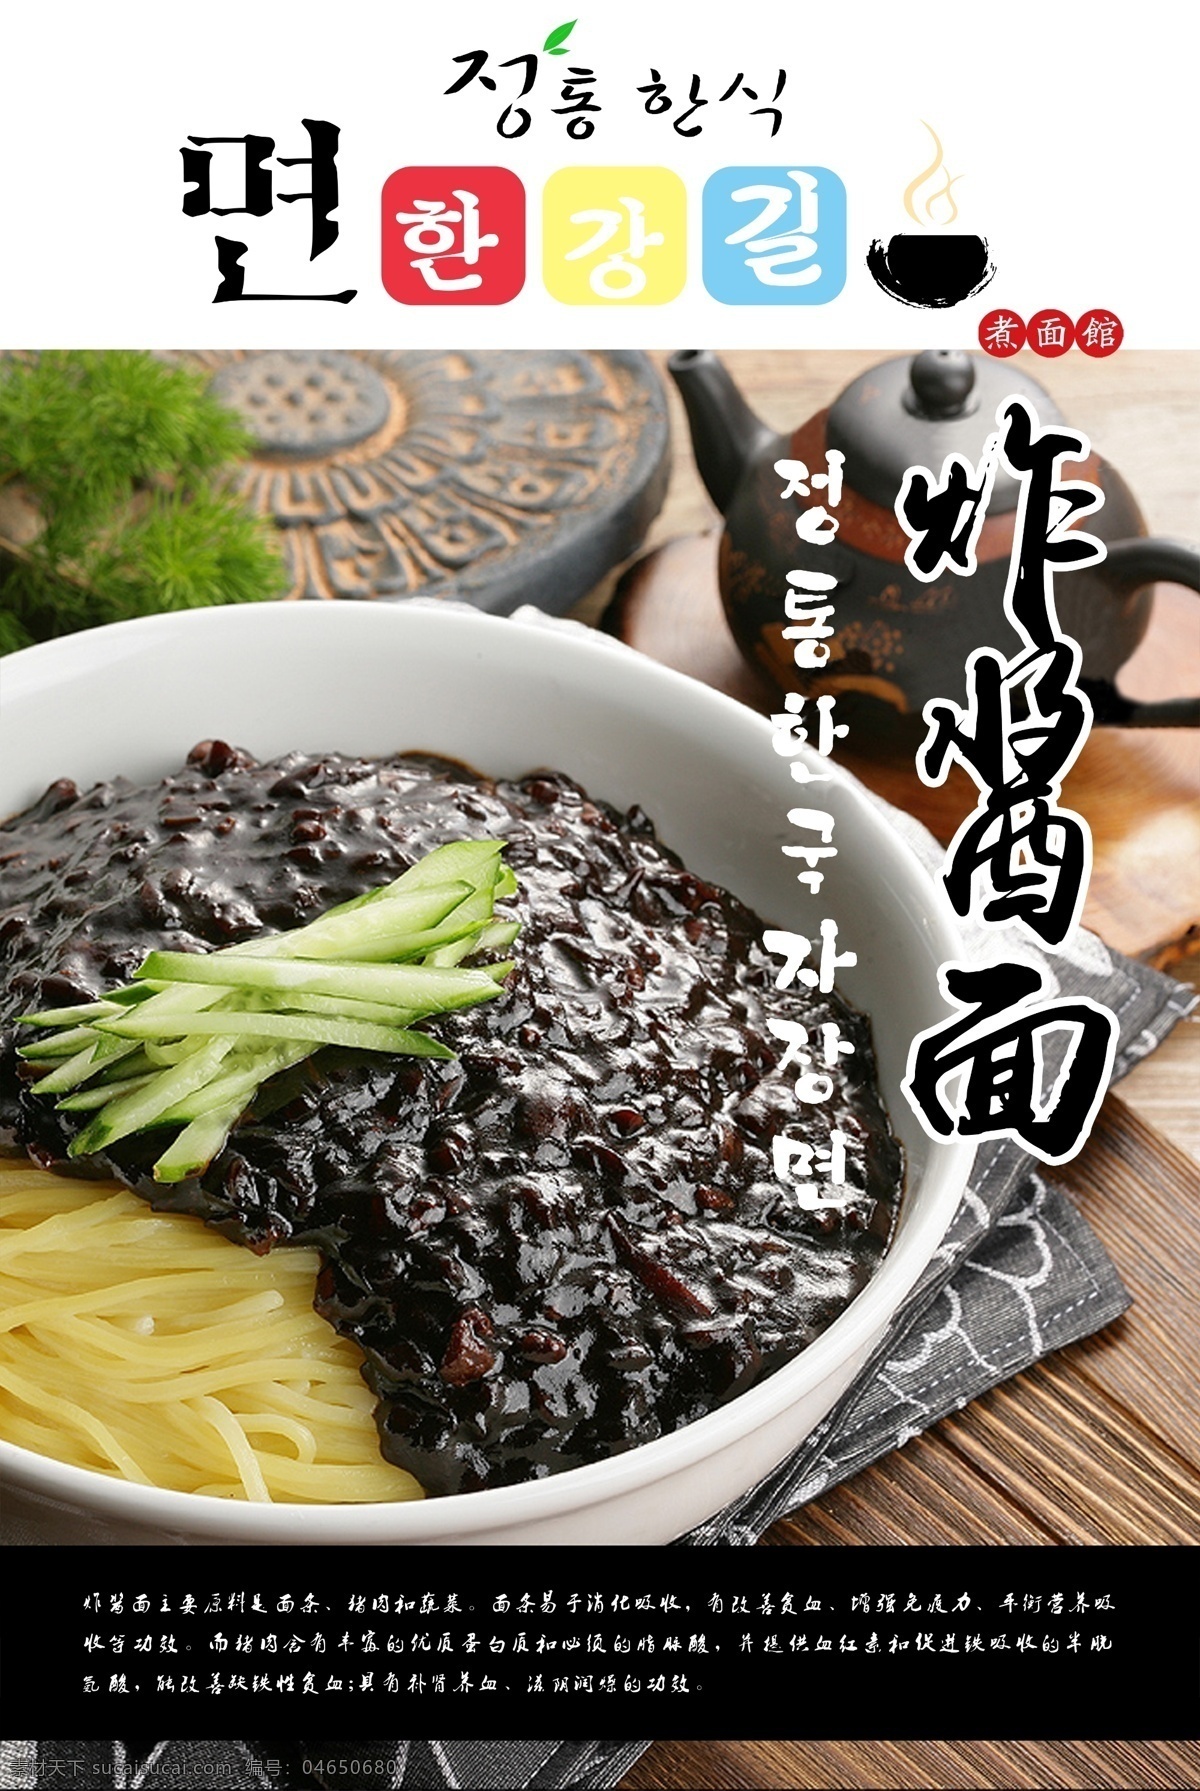 炸酱面 韩国 韩国炸酱面 标 美食 菜 叶子 设计欣赏 美食设计 黑色